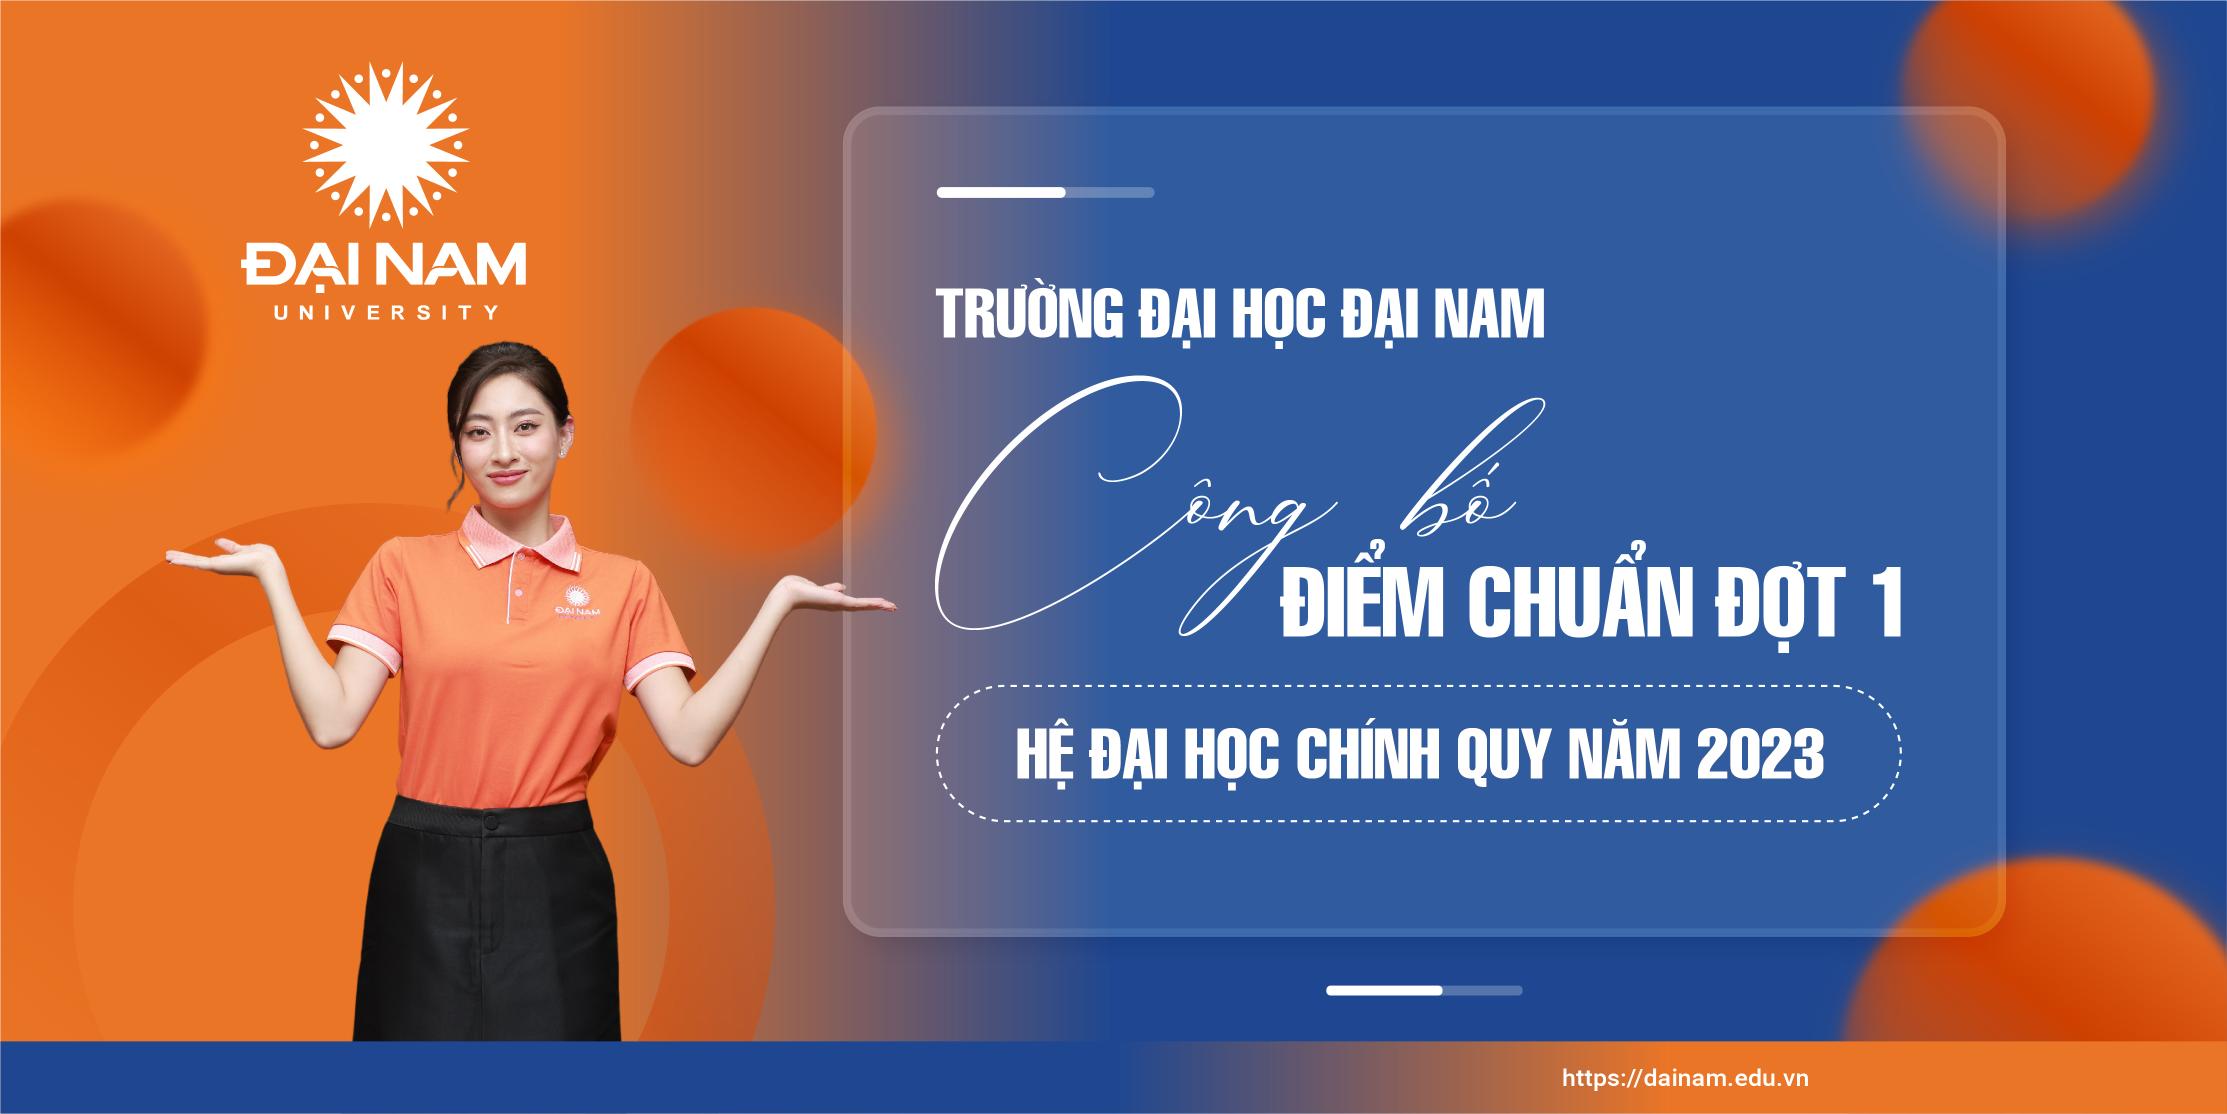 truong-dai-hoc-dai-nam-cong-bo-diem-chuan-dot-1-he-dai-hoc-chinh-quy-2023